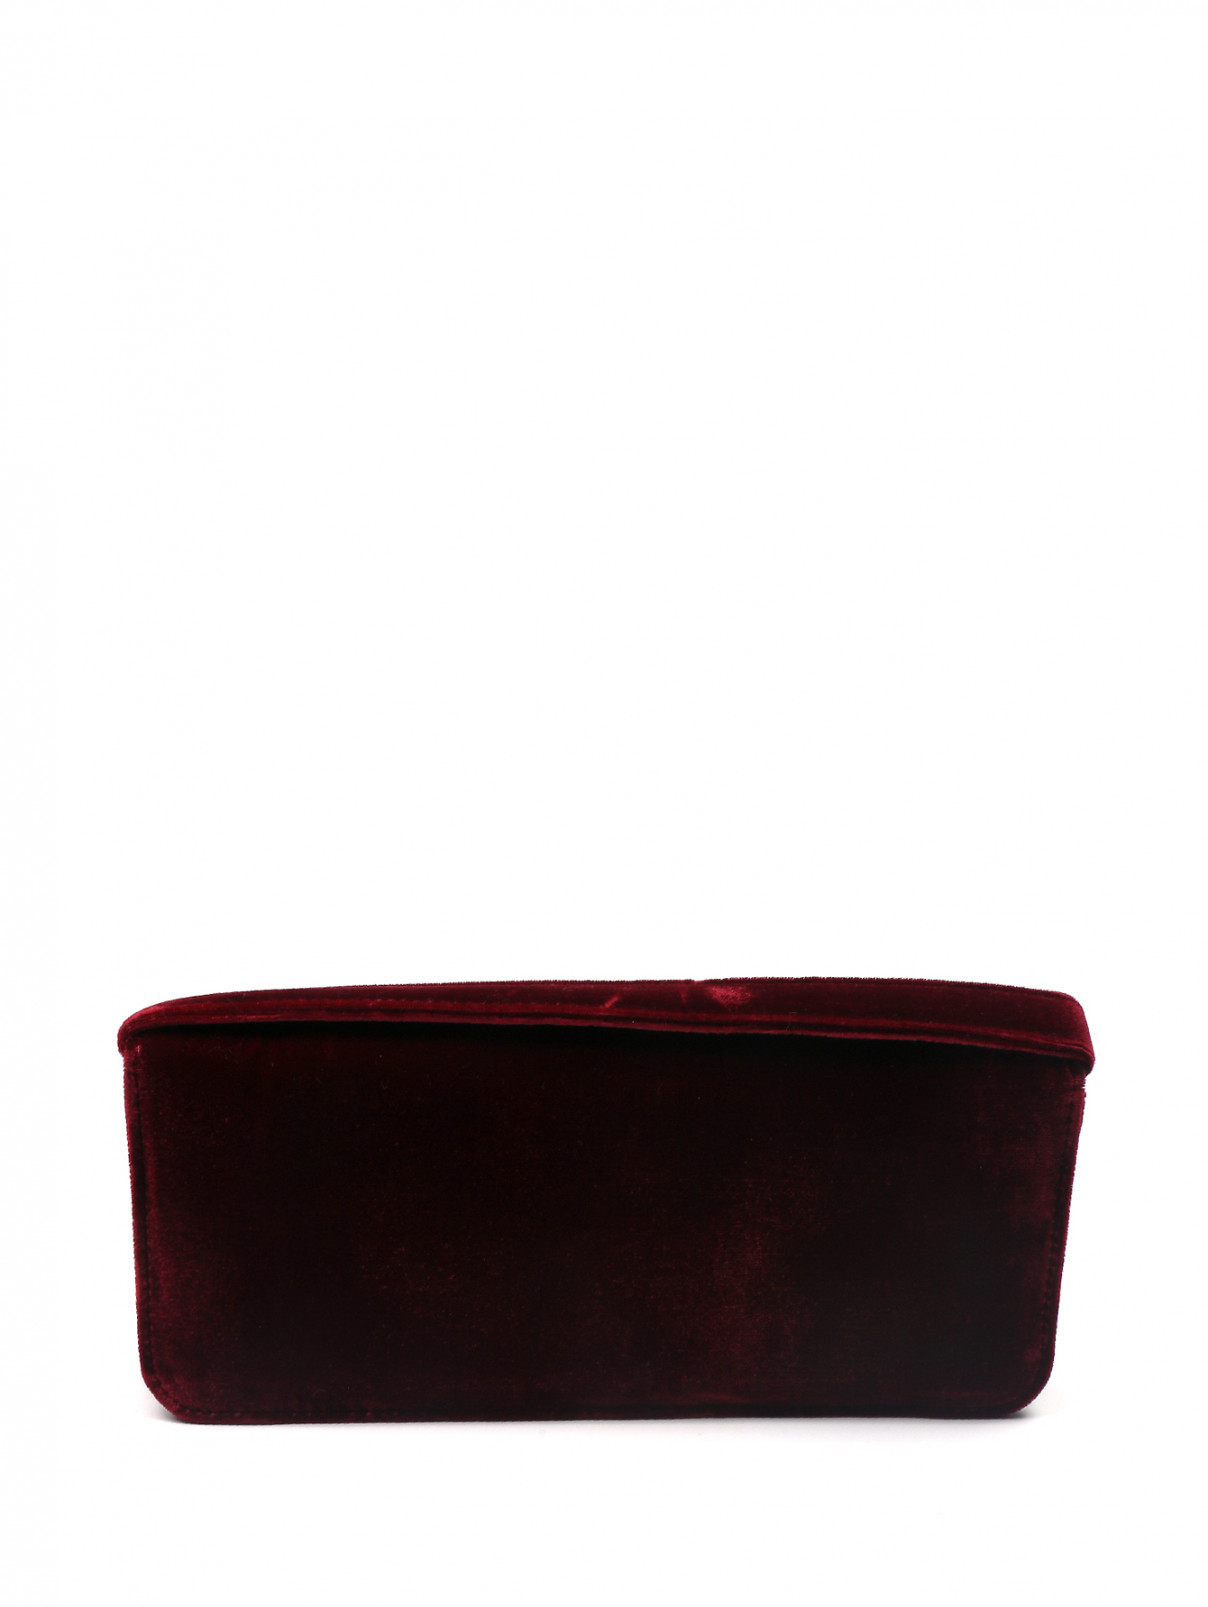 Клатч бархатный декорированный вышивкой Yanina  –  Обтравка2  – Цвет:  Красный